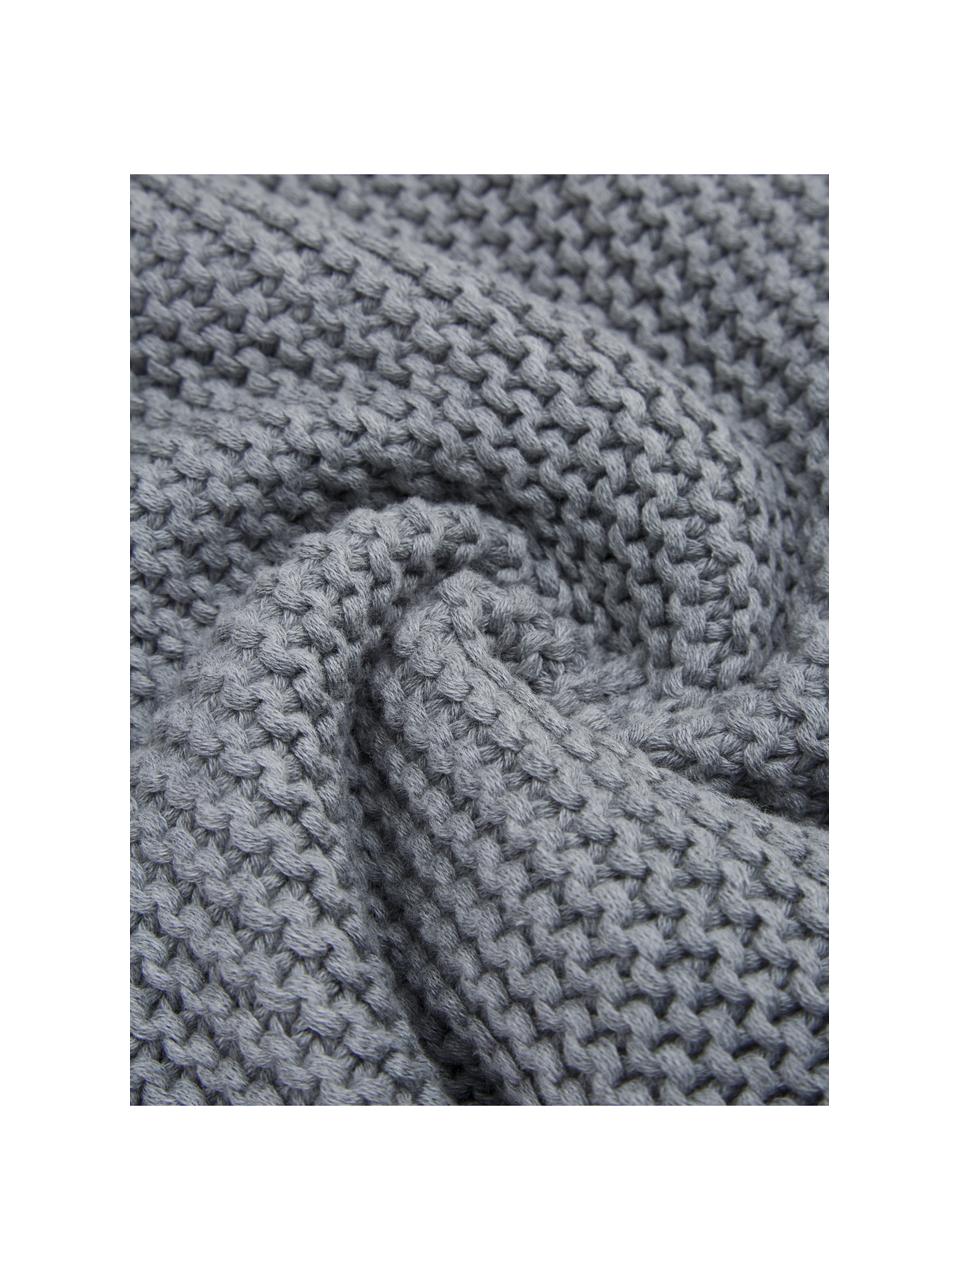 Coperta a maglia in cotone organico grigio Adalyn, 100% cotone organico, certificato GOTS, Grigio, Larg. 150 x Lung. 200 cm